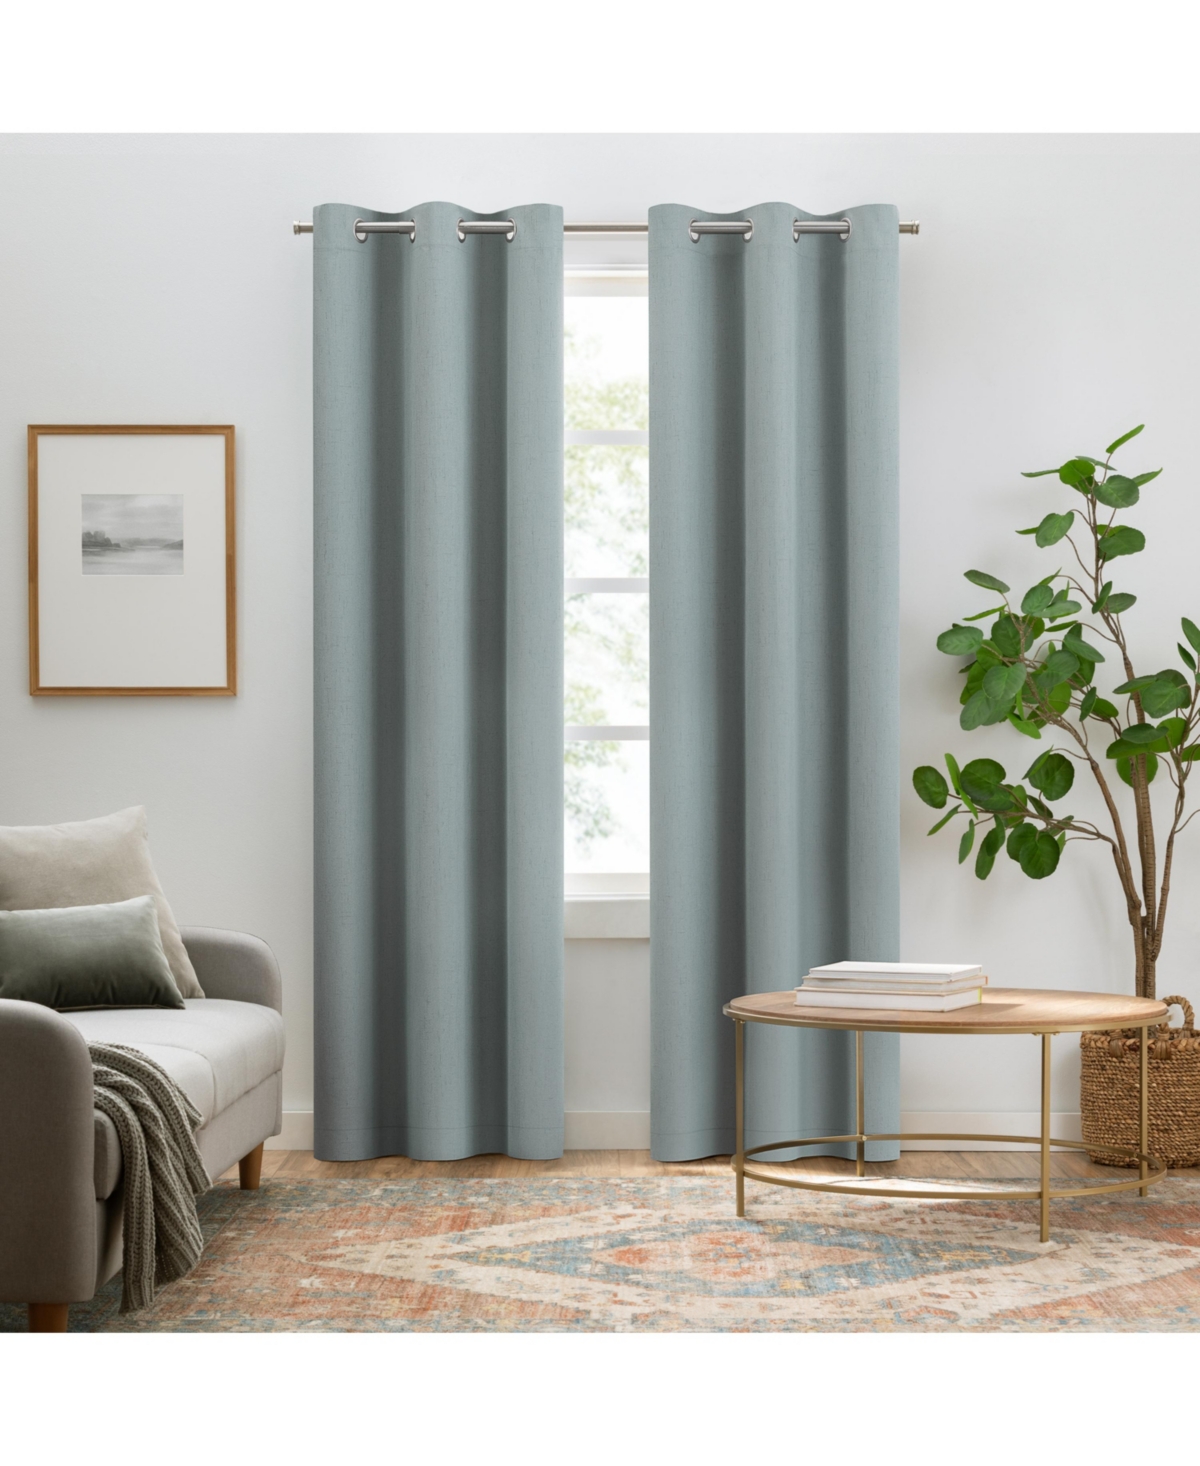 Pembroke 100% Blackout Curtains, Faux Linen Grommet Window Curtains, 84" long x 42" wide (2 Panels), Stormy Blue - Blue